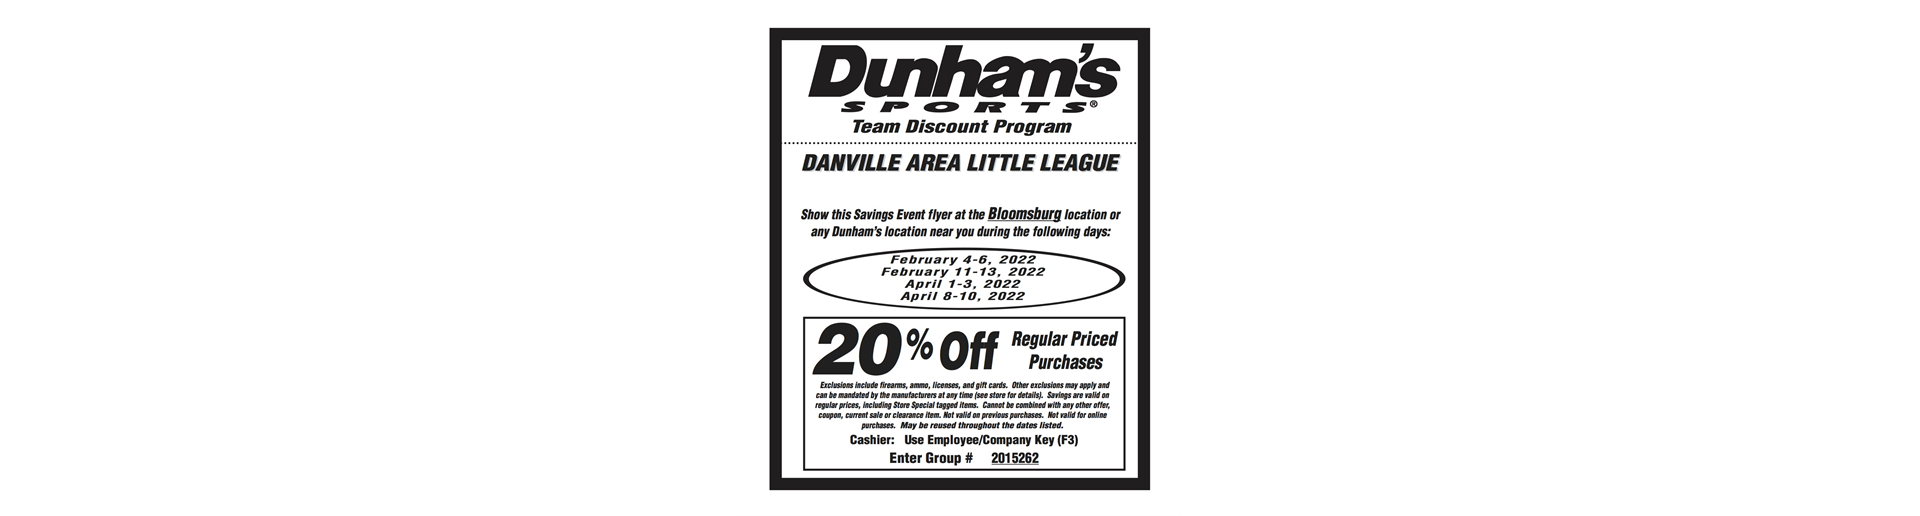 Dunhams Sports 20% Weekends